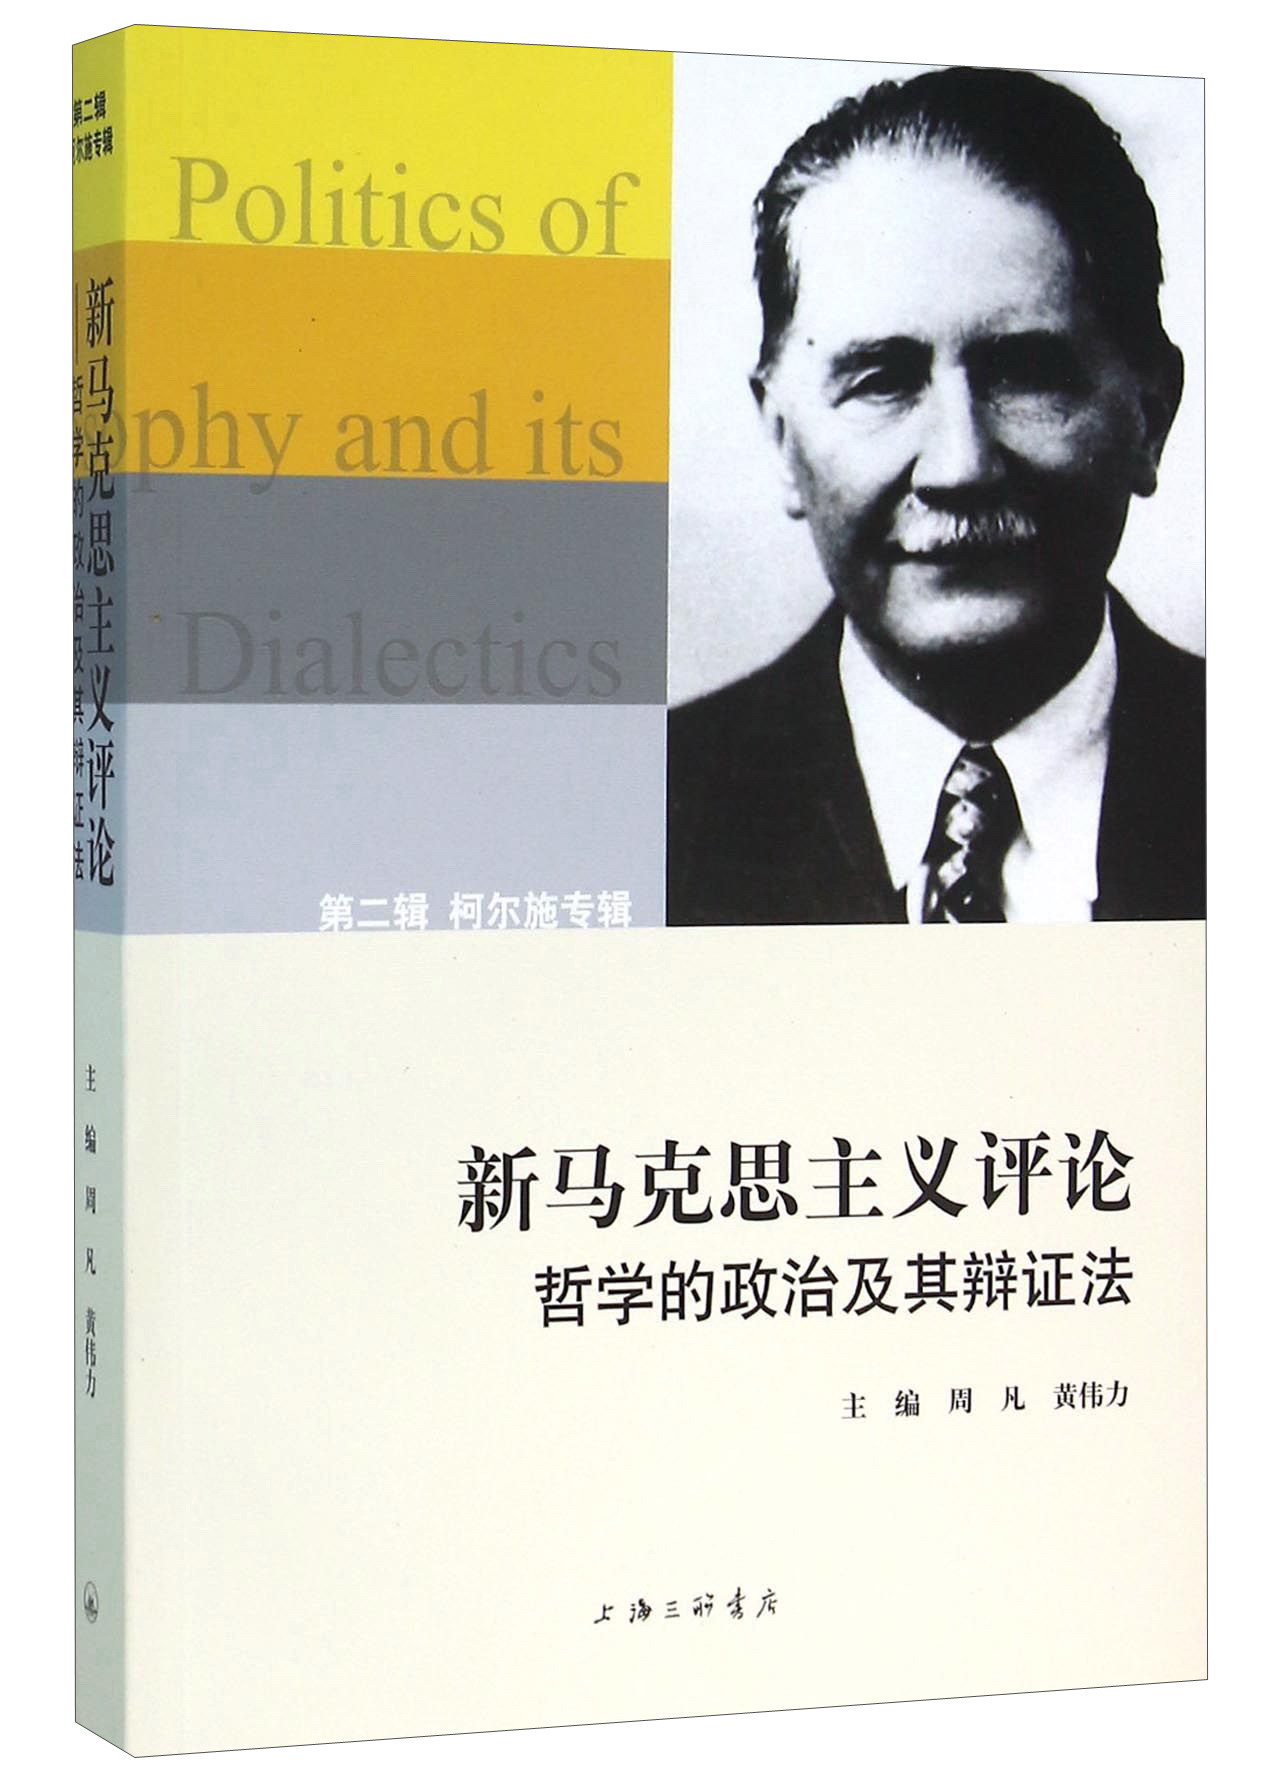 新马克思主义评论 哲学的政治及其辩证法 （第二辑） 柯尔施专辑 pdf格式下载